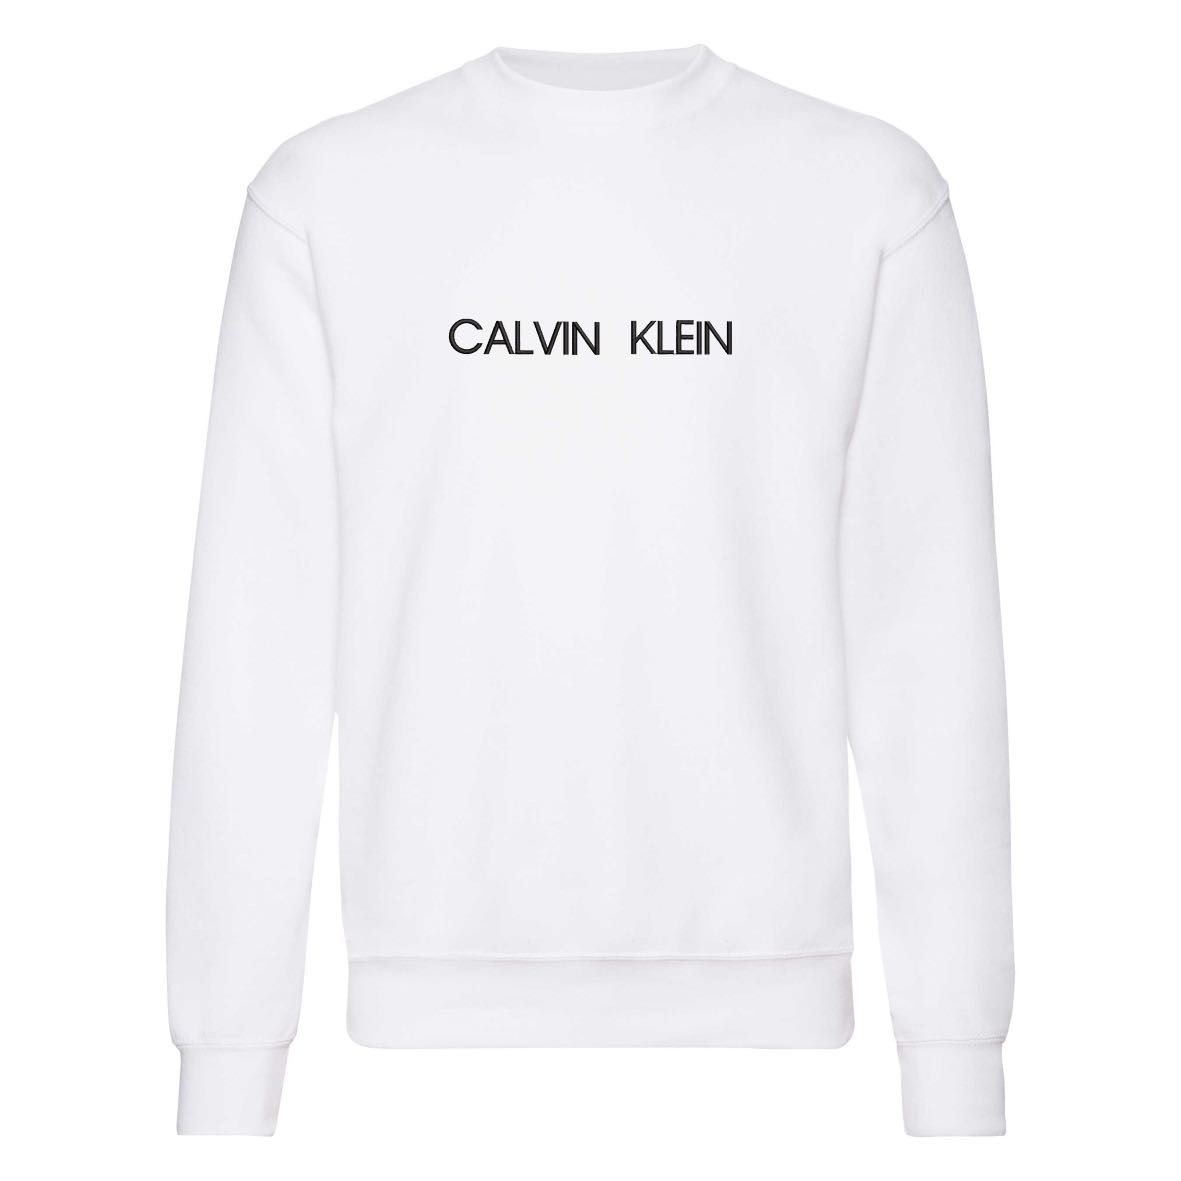 Bluza sportowa Calvin Klein rozmiar S